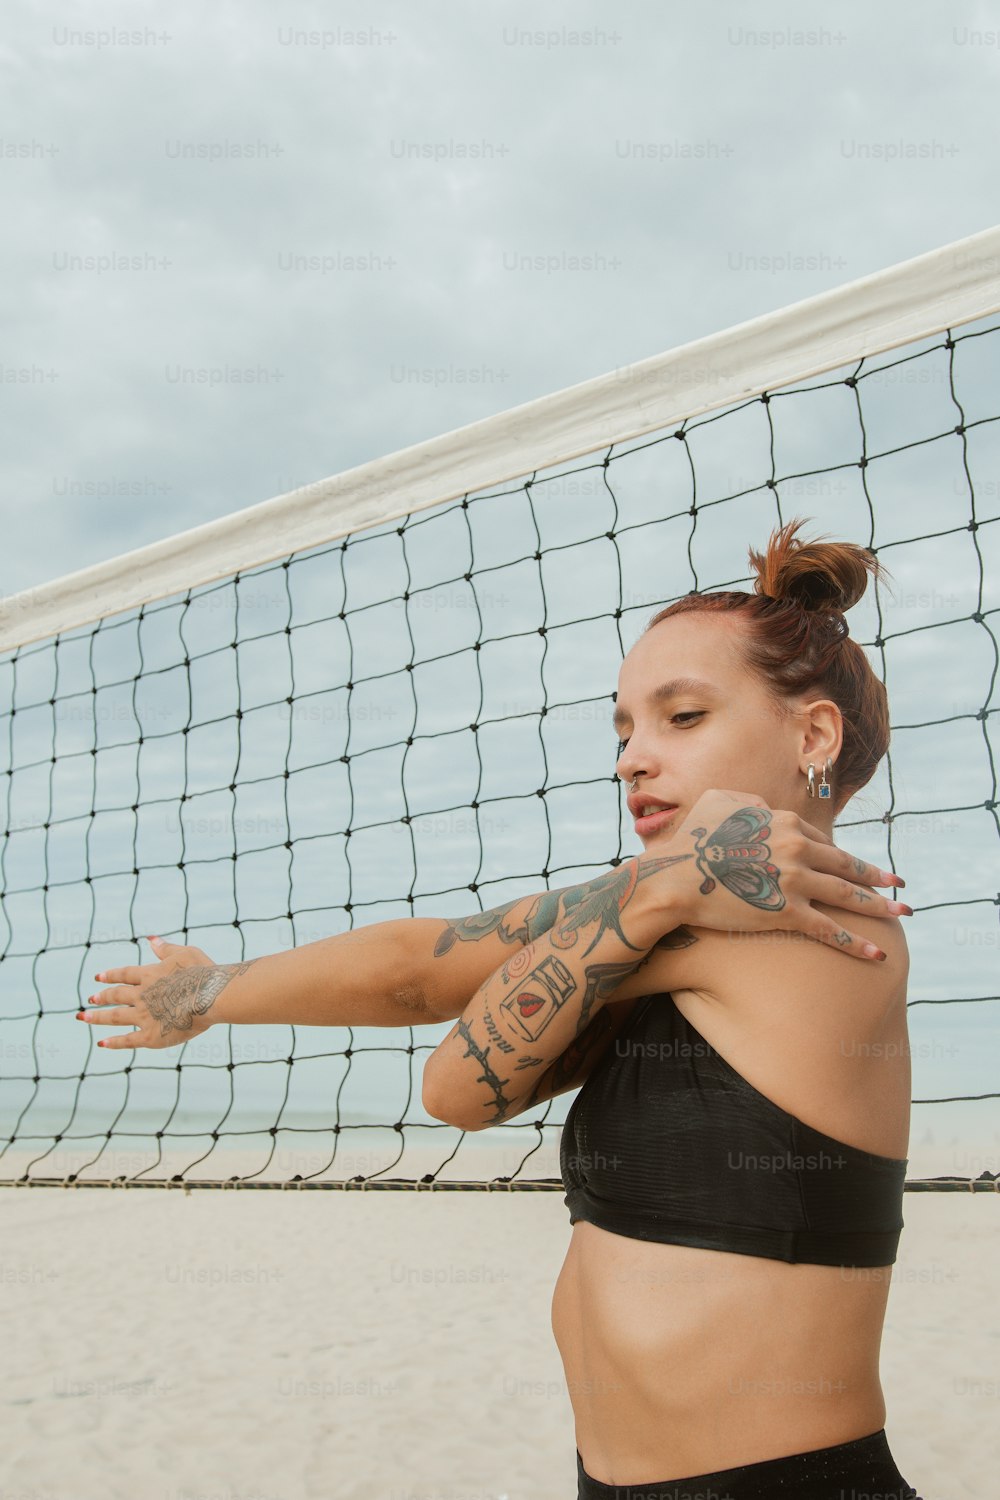 Eine Frau mit Tattoos auf dem Arm steht vor einem Volleyballnetz